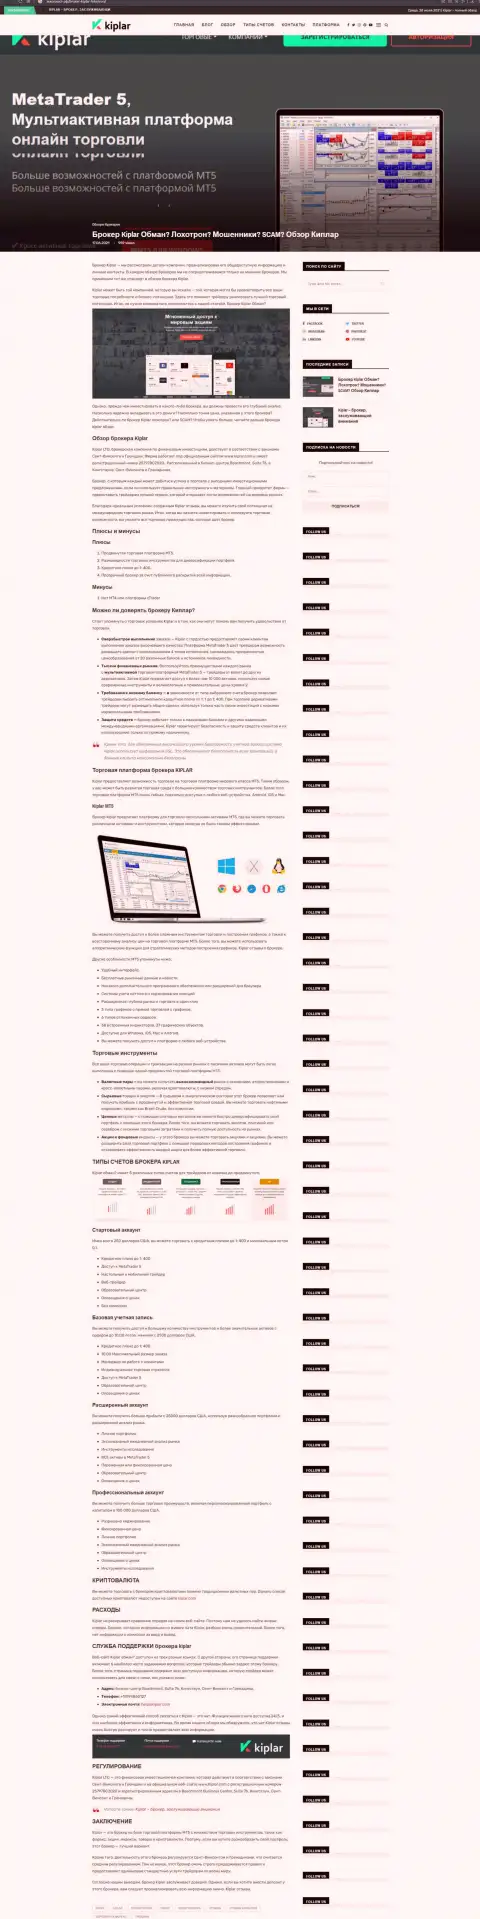 Интересная информационная публикация о ФОРЕКС брокерской компании Kiplar на интернет-портале Эккопласт Рф